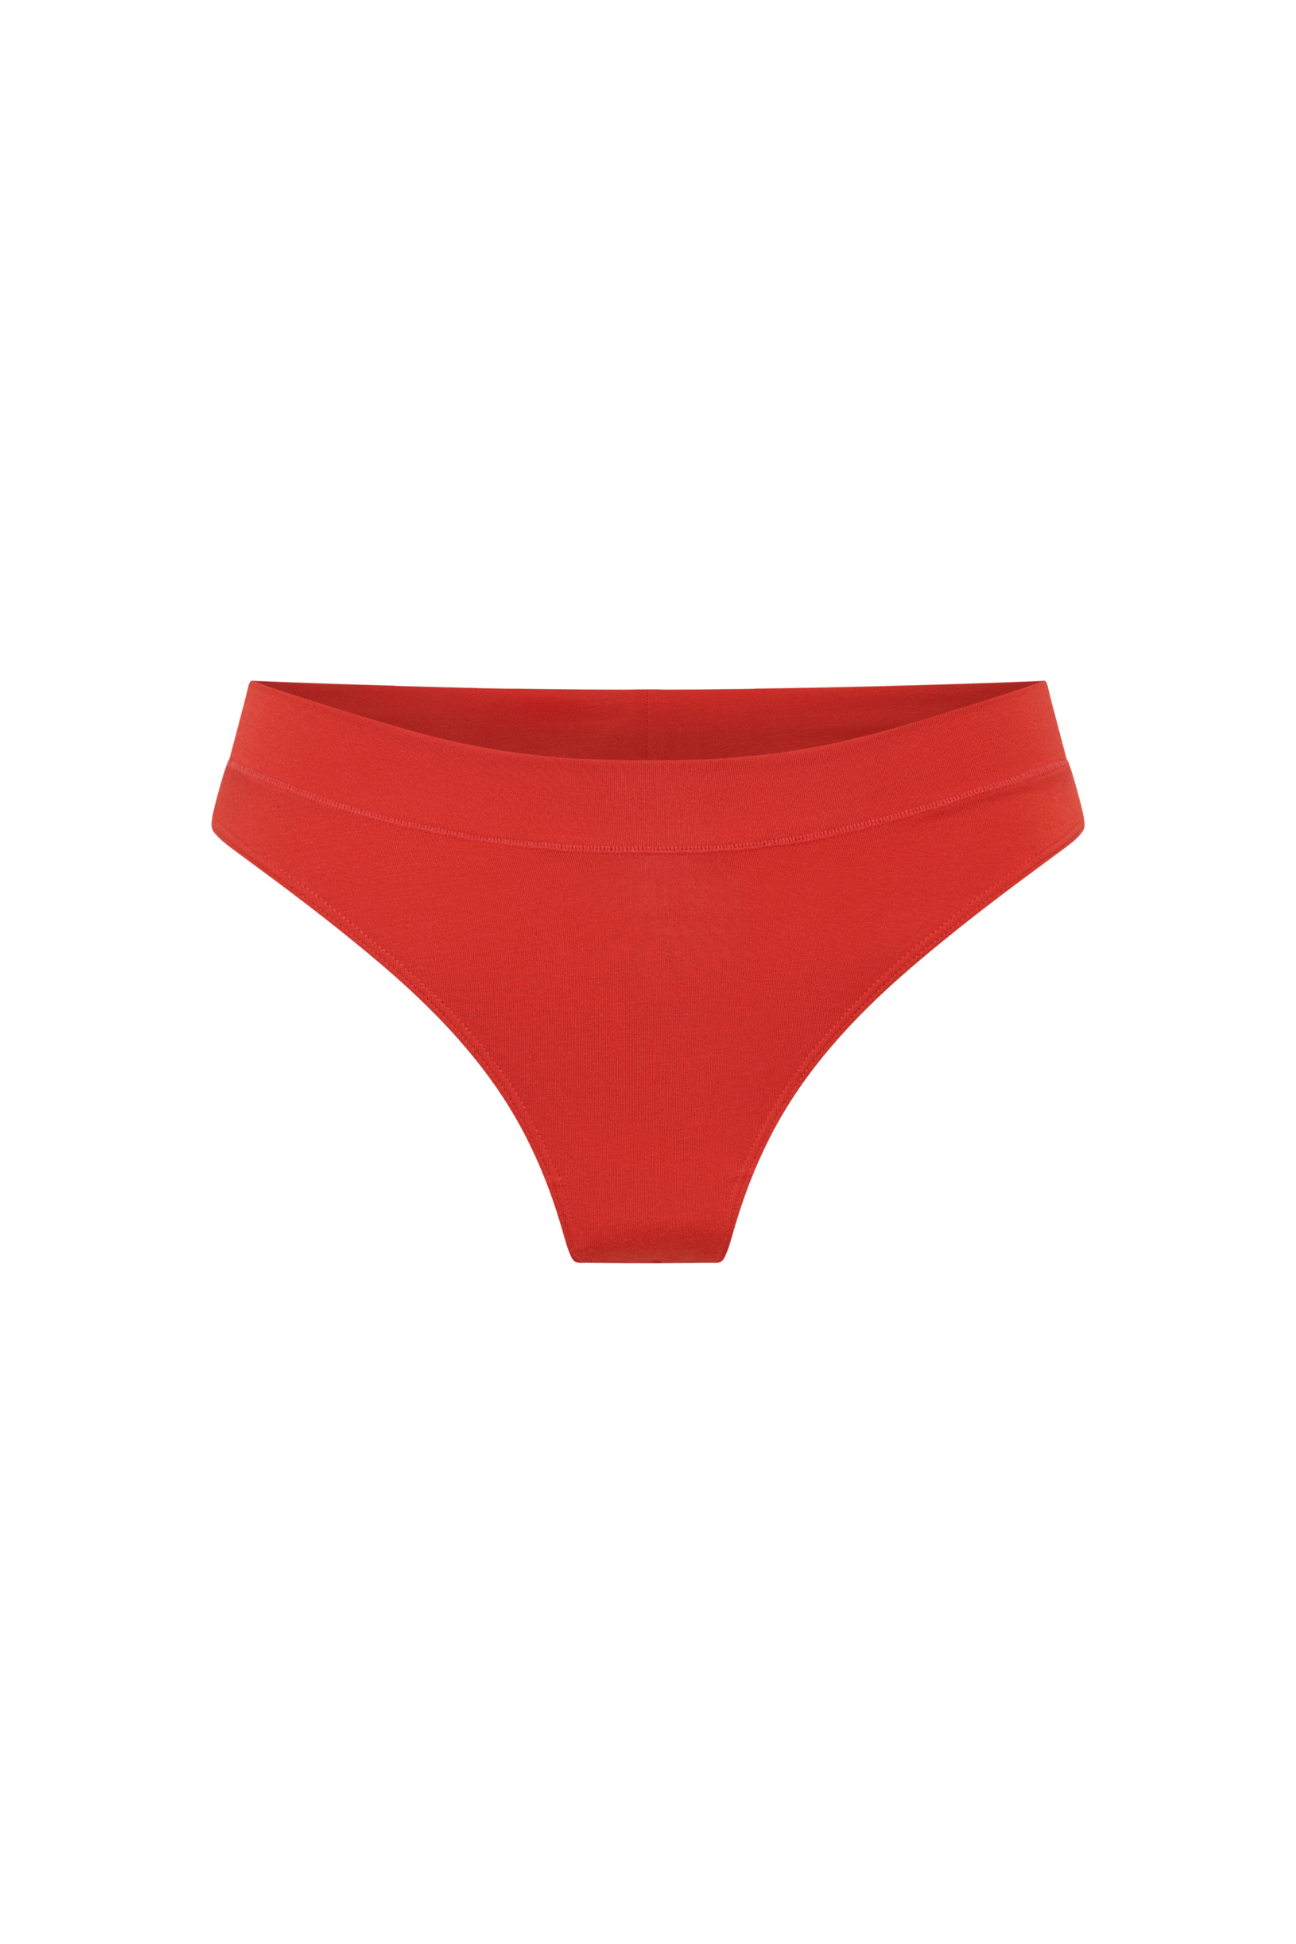 The G-String - Cherry Limited Edition, Undies - First Thing Underwear